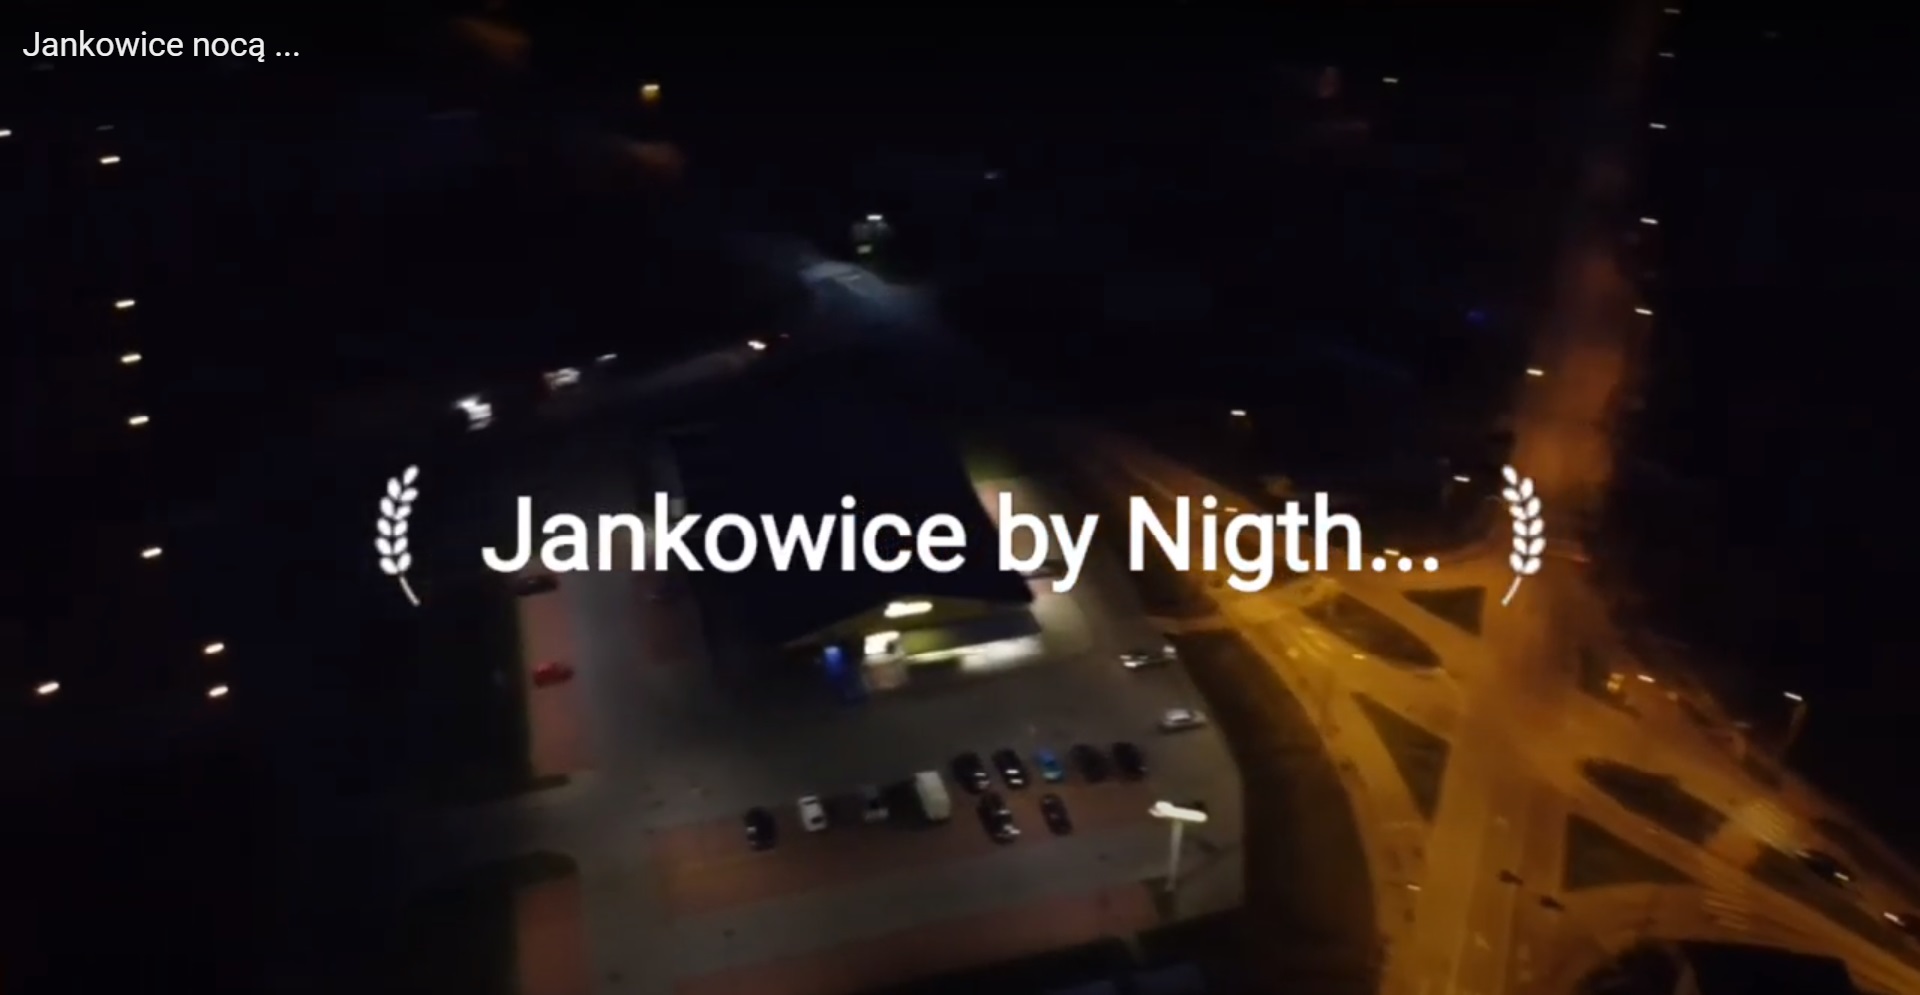 Jankowice